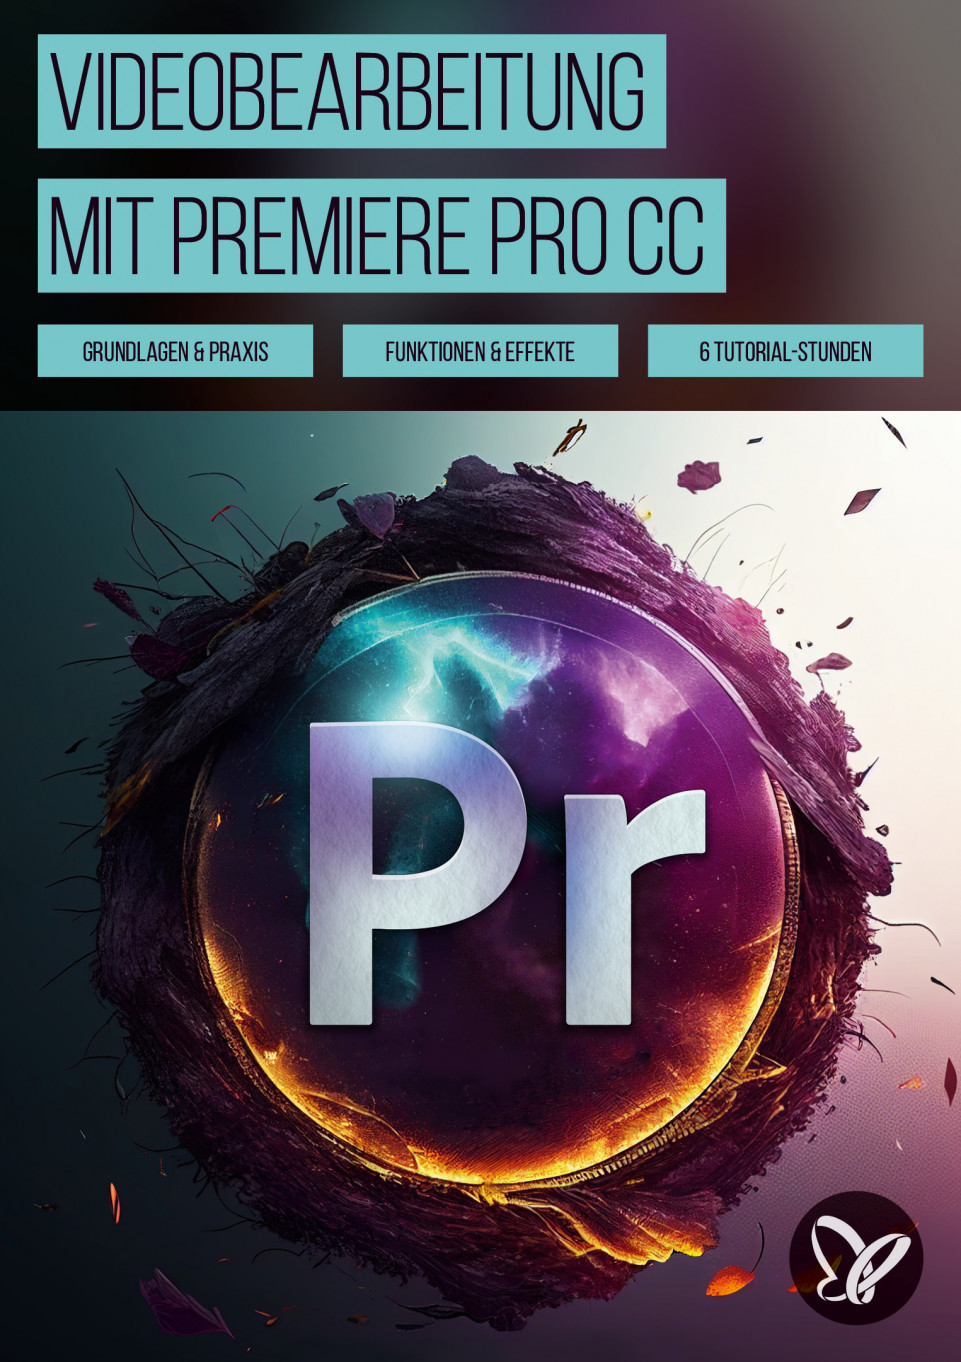 Videobearbeitung mit Adobe Premiere Pro CC – Grundlagen & Praxis (Tutorial)